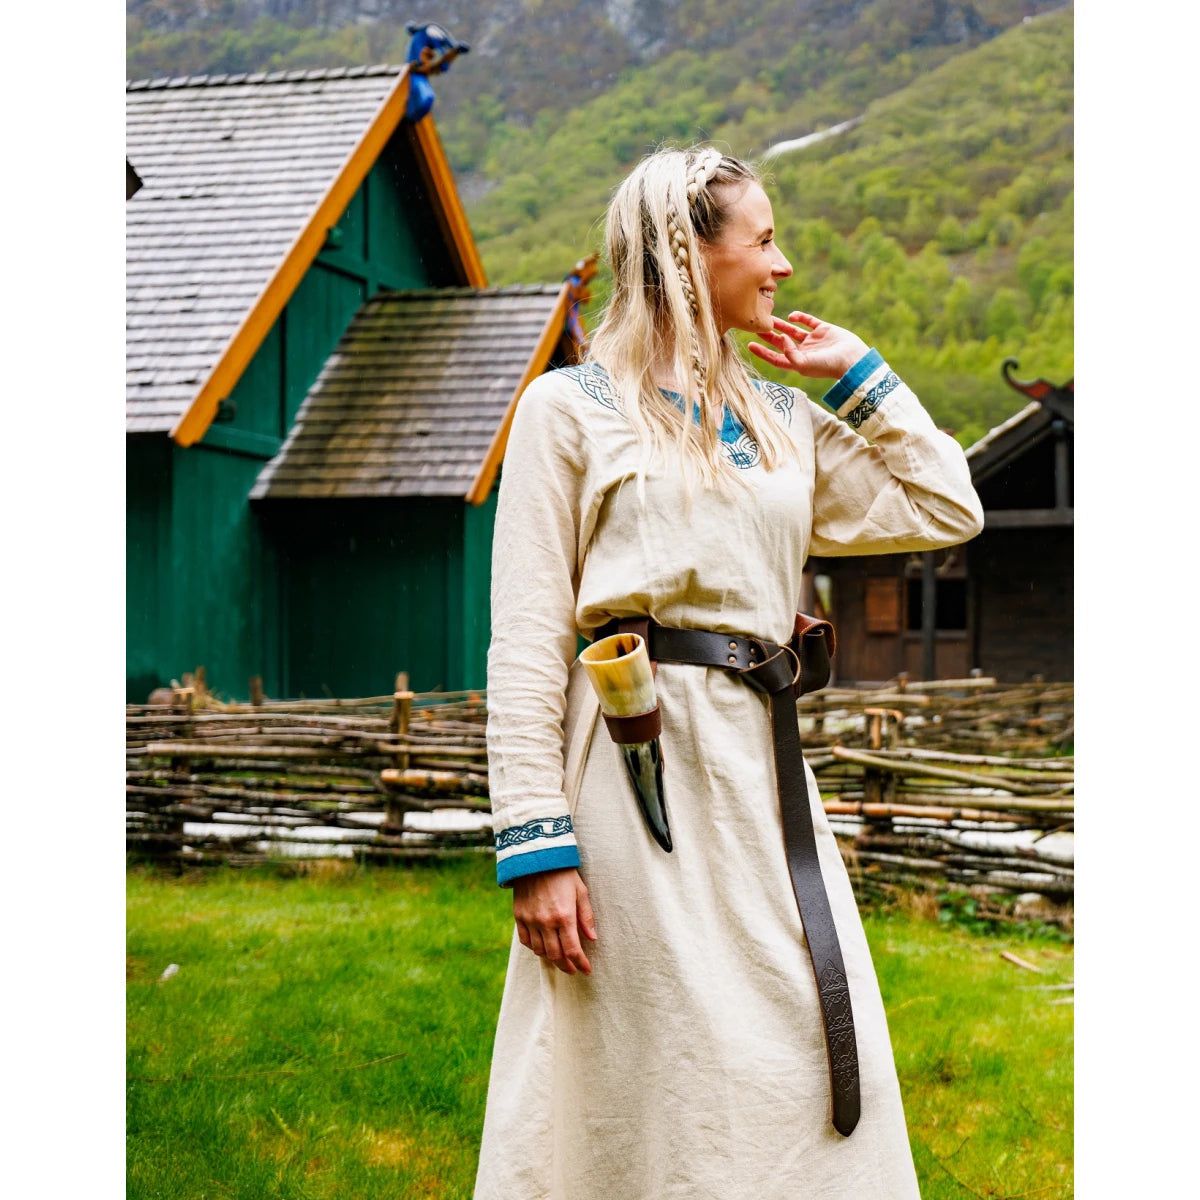 Vestido vikingo de algodón natural con ribete azul: la elegancia se une al espíritu guerrero